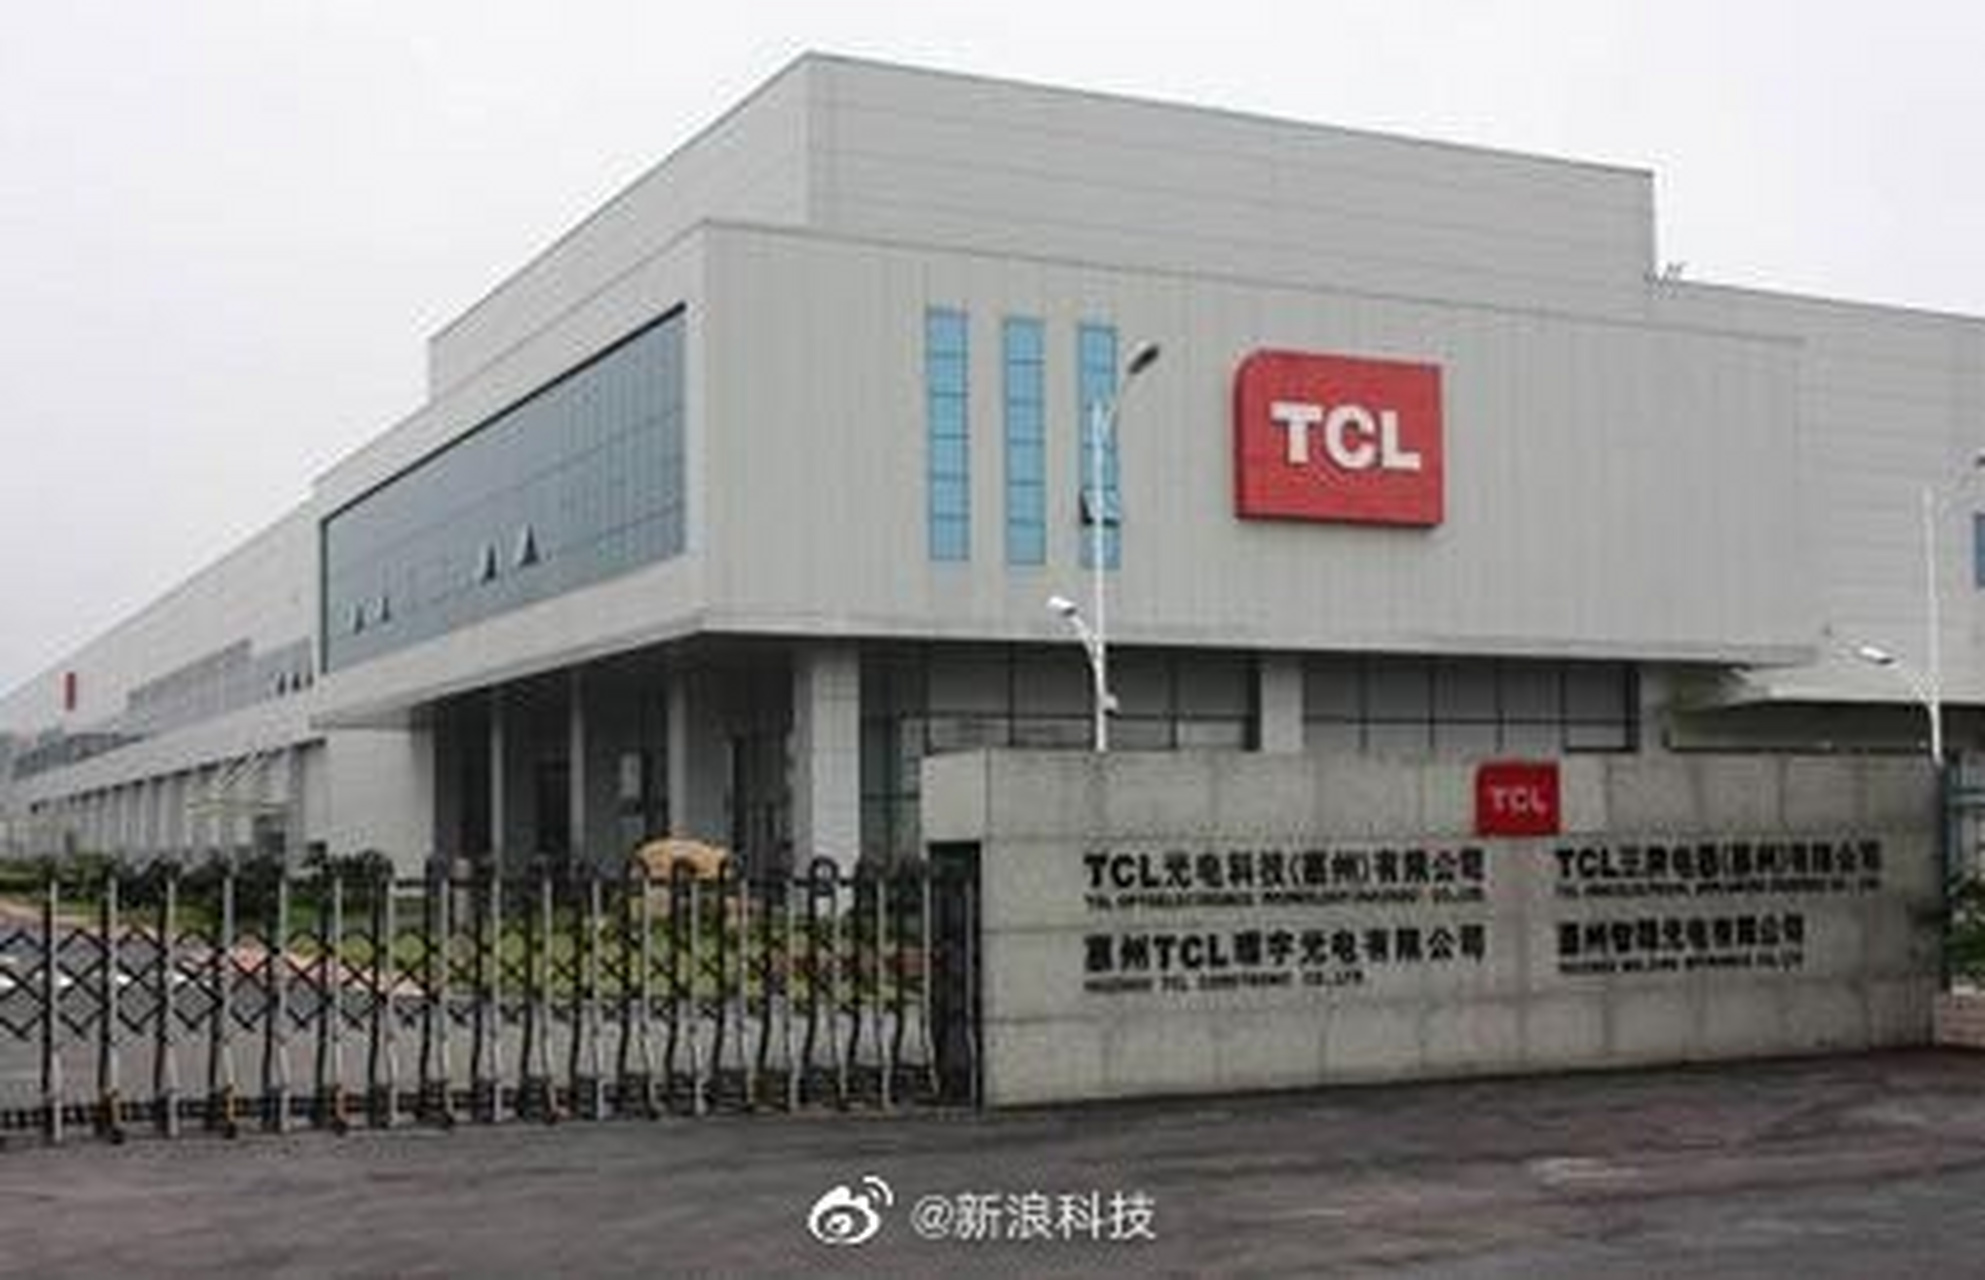 【tcl电子收购tcl通讯获股东大会通过】7月28日,tcl电子控股有限公司